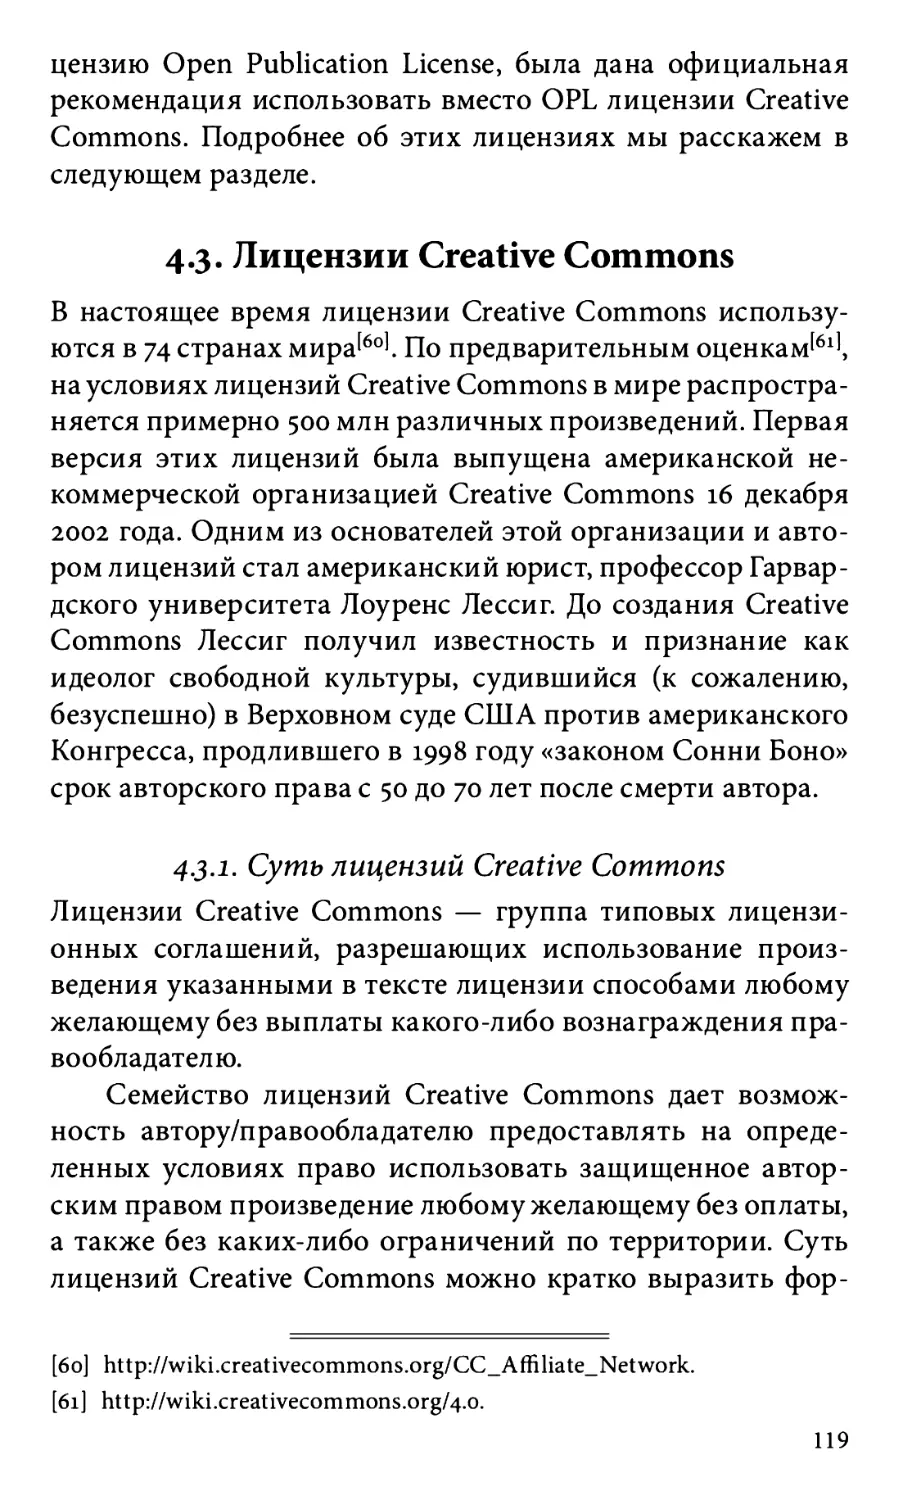 4.3. Лицензии Creative Commons